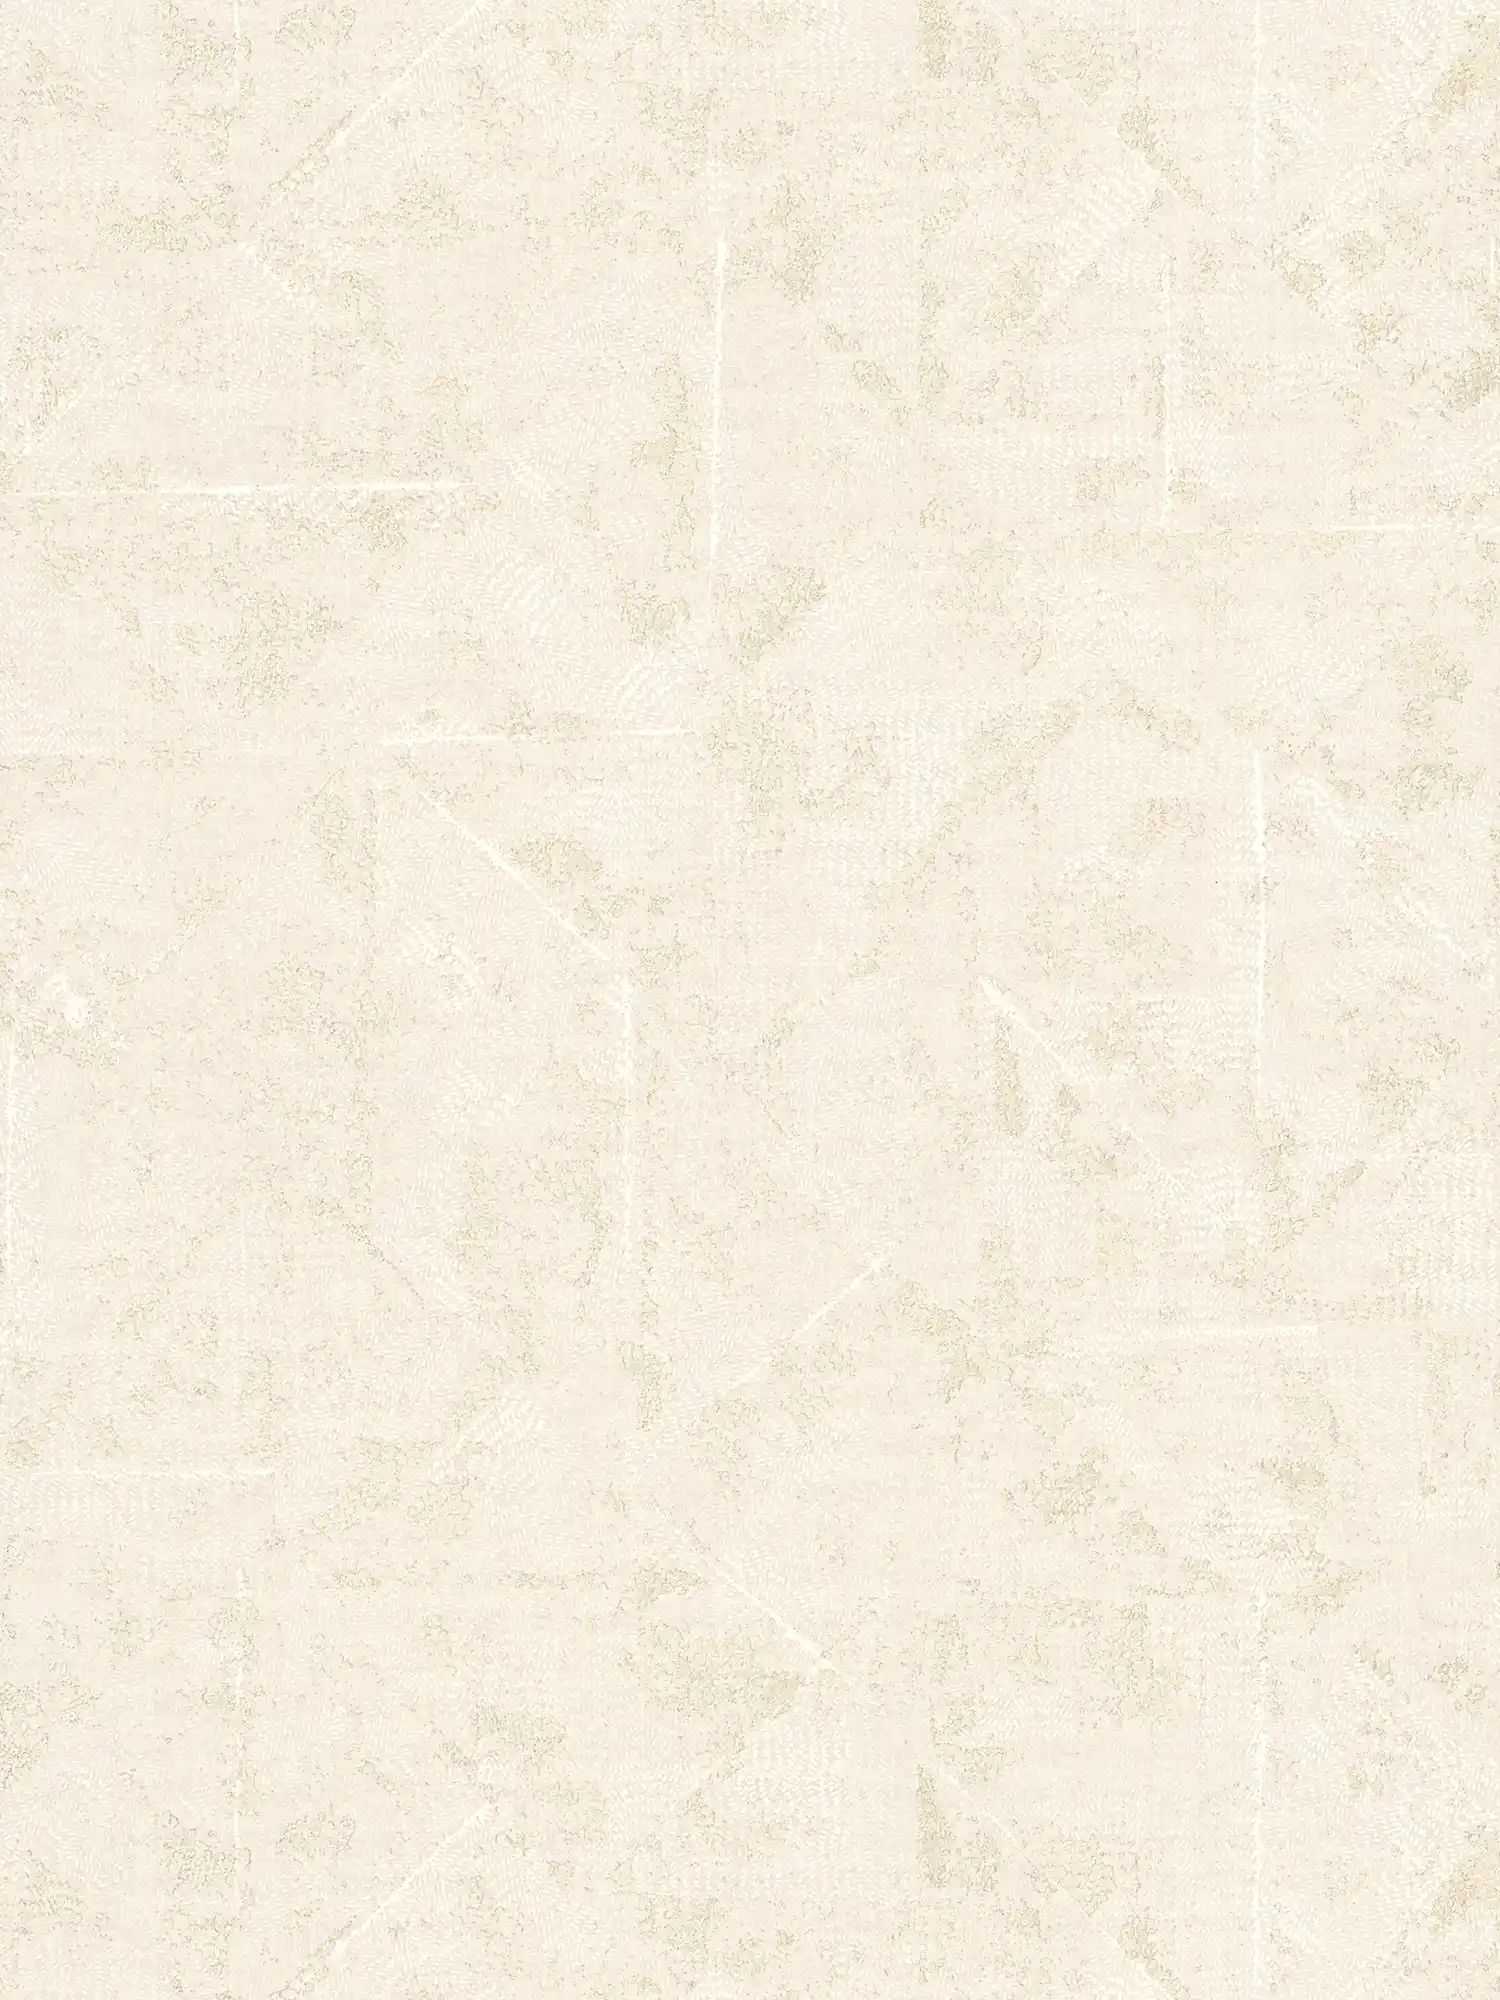 papel pintado con motivos asimétricos, aspecto usado - crema, blanco, dorado
